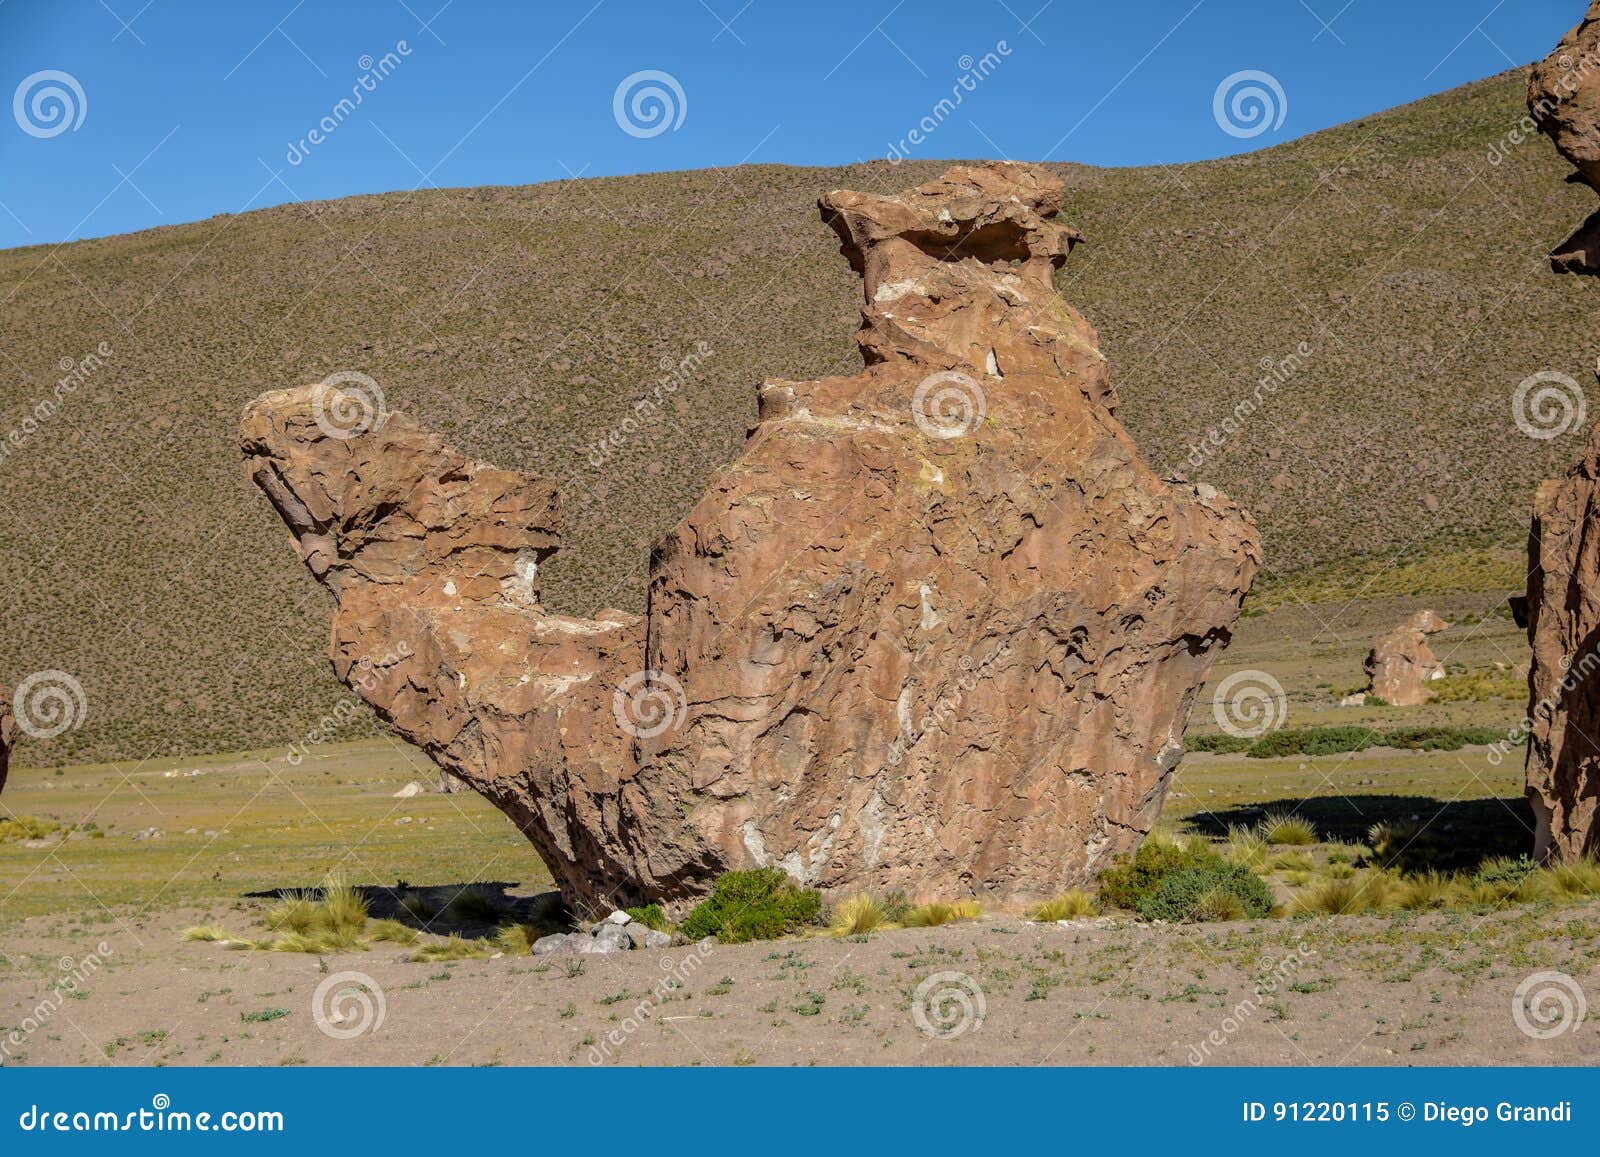 camel rock formation in italia perdida in bolivean altiplano - potosi department, bolivia